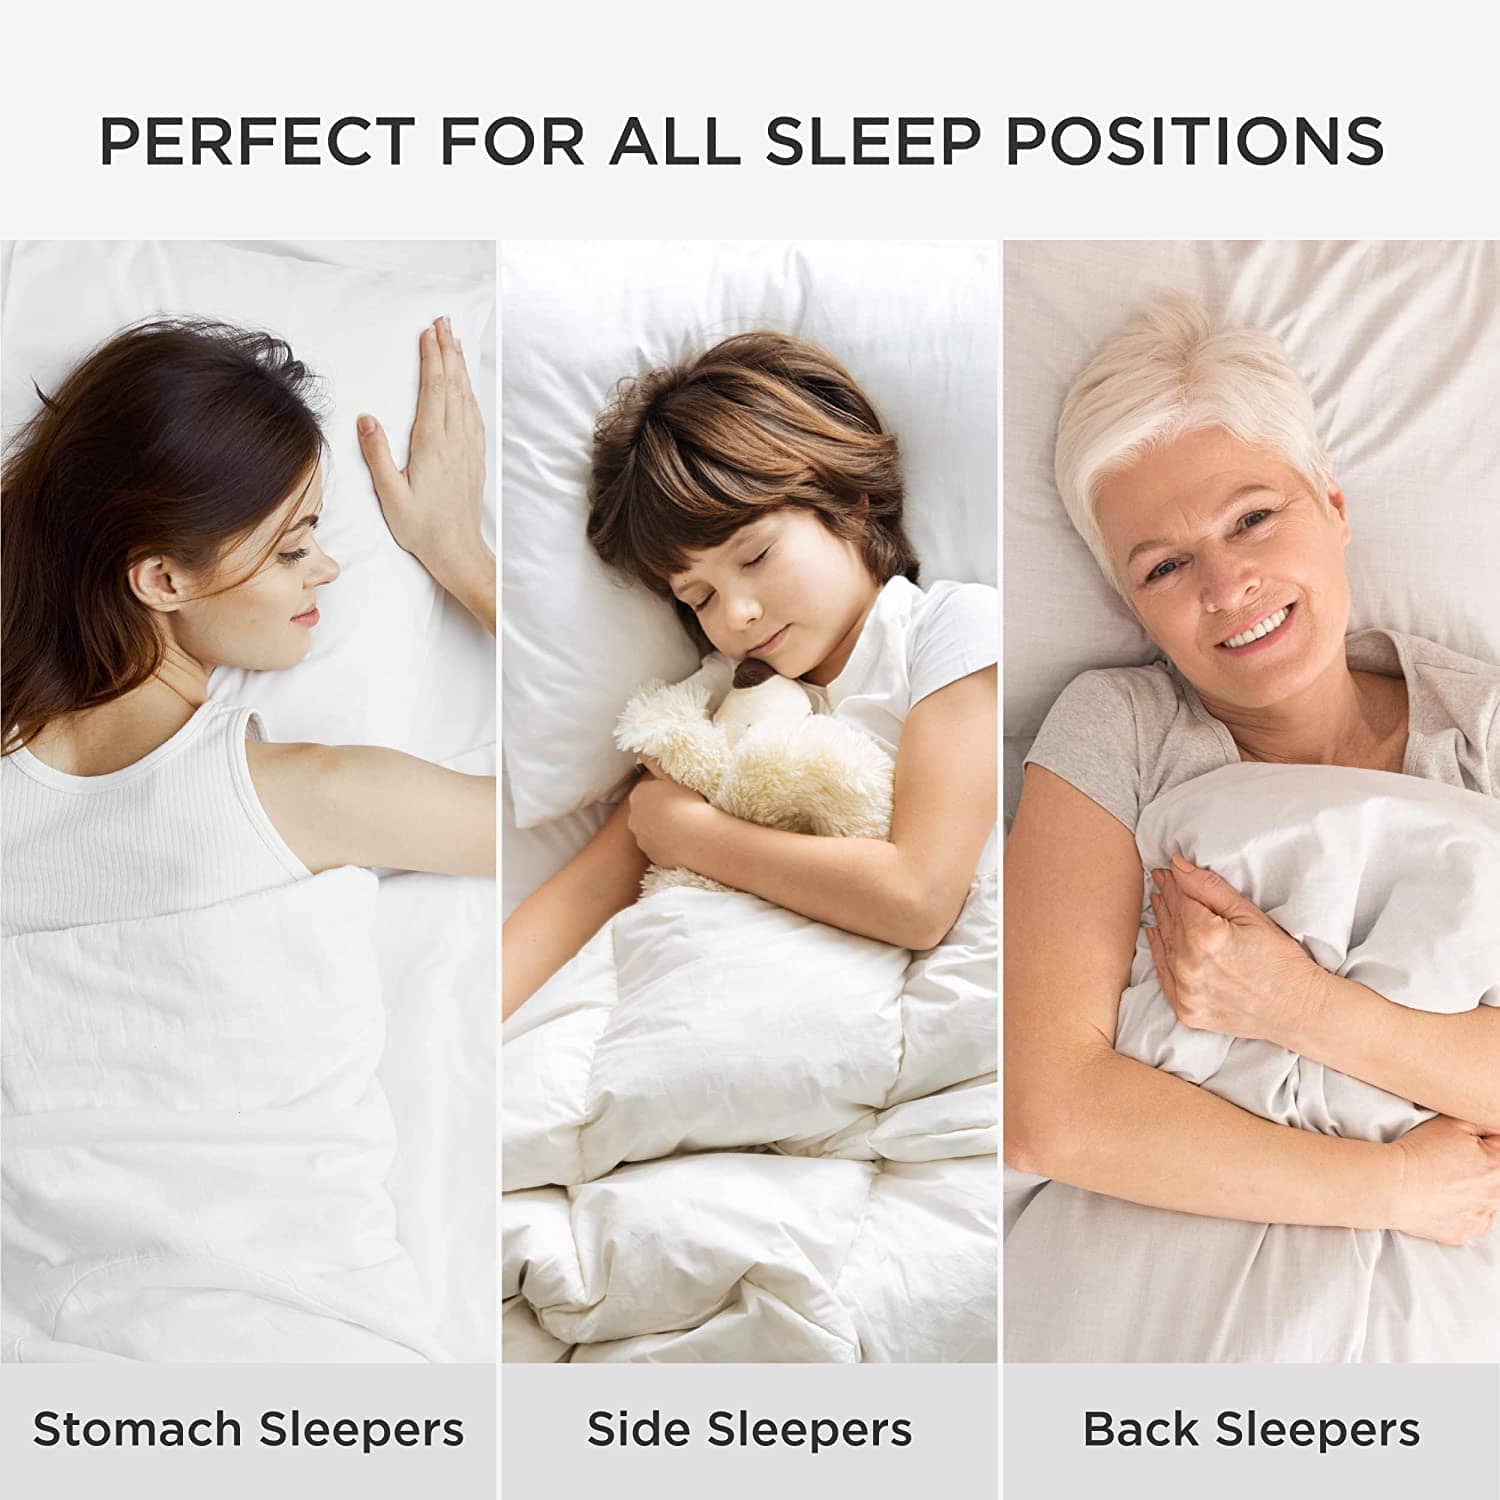 Bedsure Down Alternative Pillow